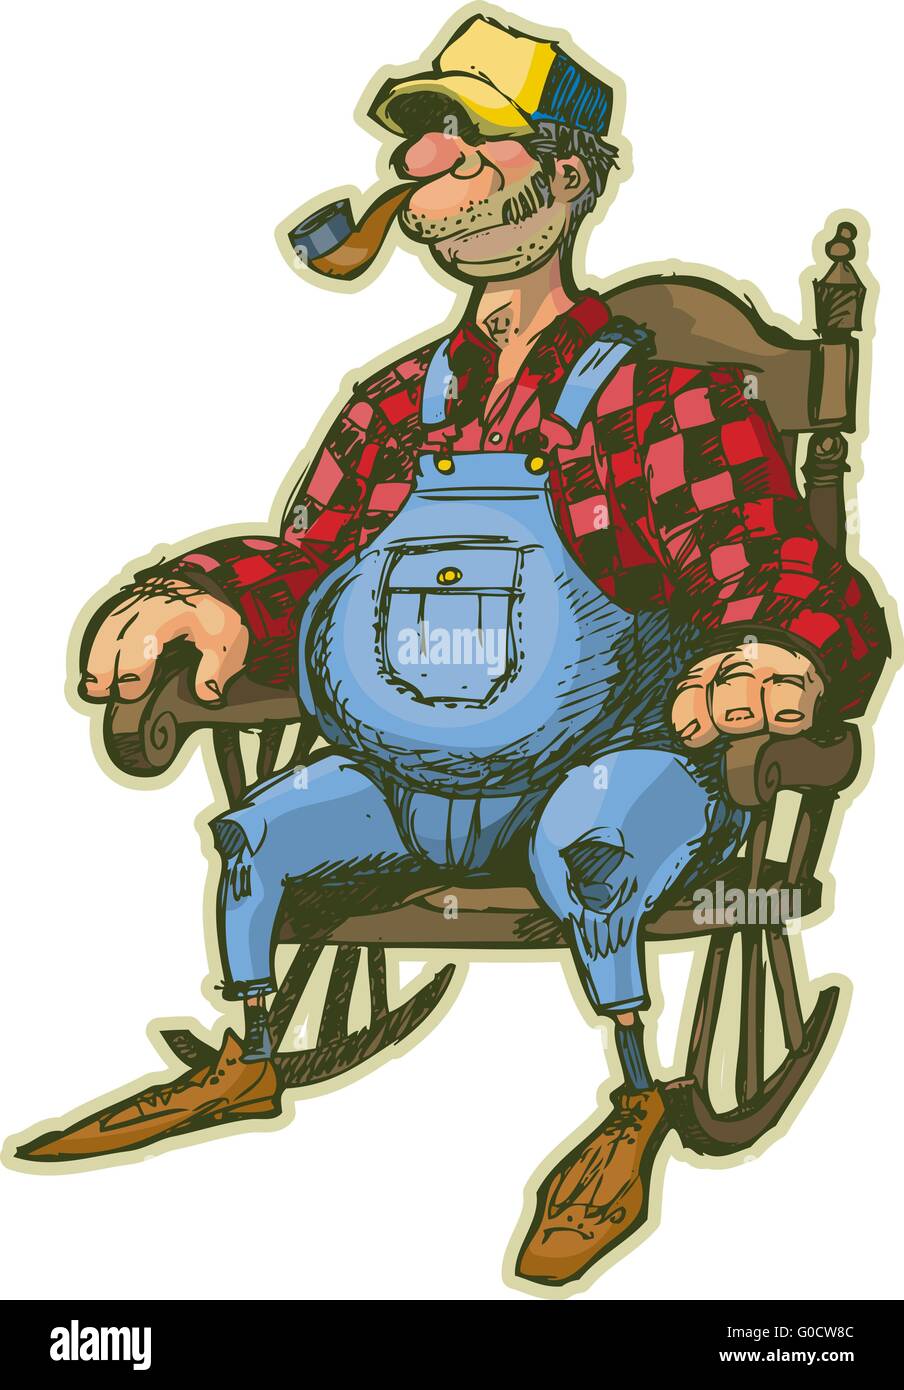 Un vecteur caricature d'un homme âgé dans un rocking-chair. Ressemble à un agriculteur ou une personne qui vit dans le pays. Illustration de Vecteur